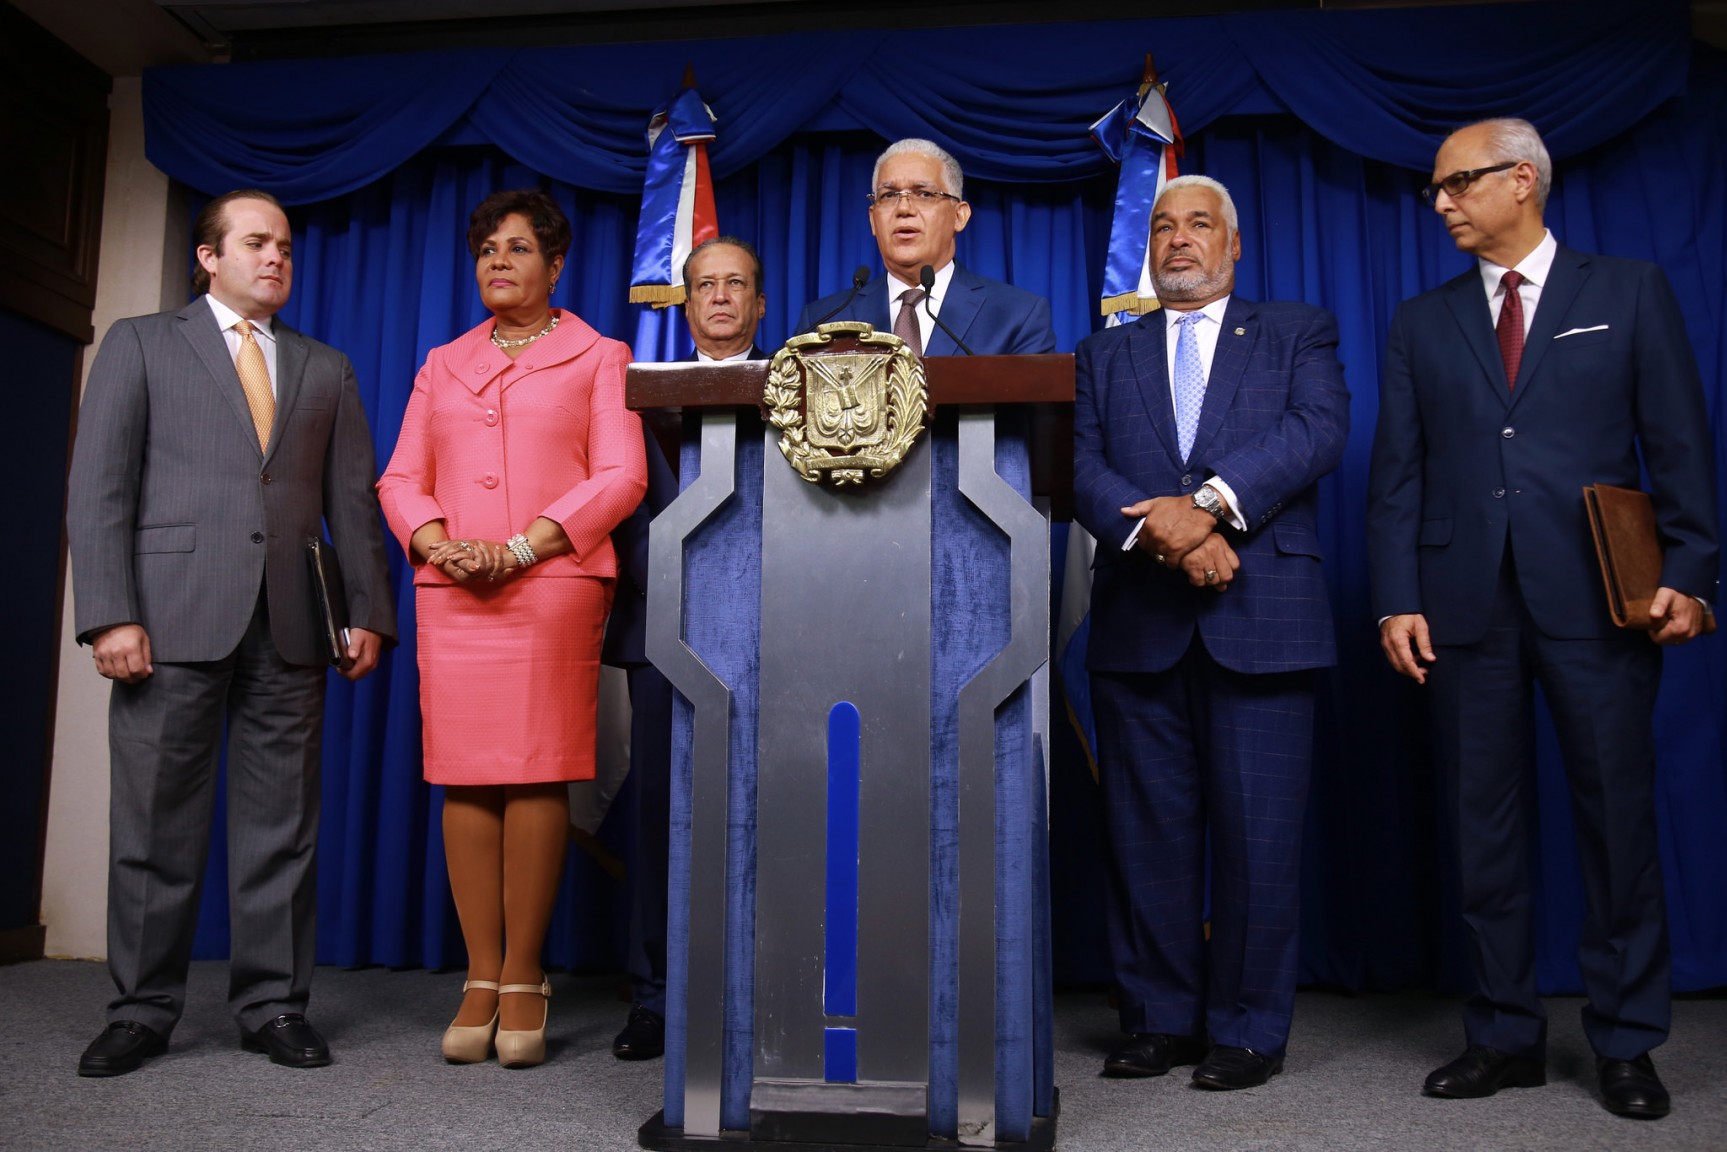 REPÚBLICA DOMINICANA: Ciudadanos podrán seguir en vivo vistas públicas escogencia candidatos TC a través página web Presidencia y canal 4RD